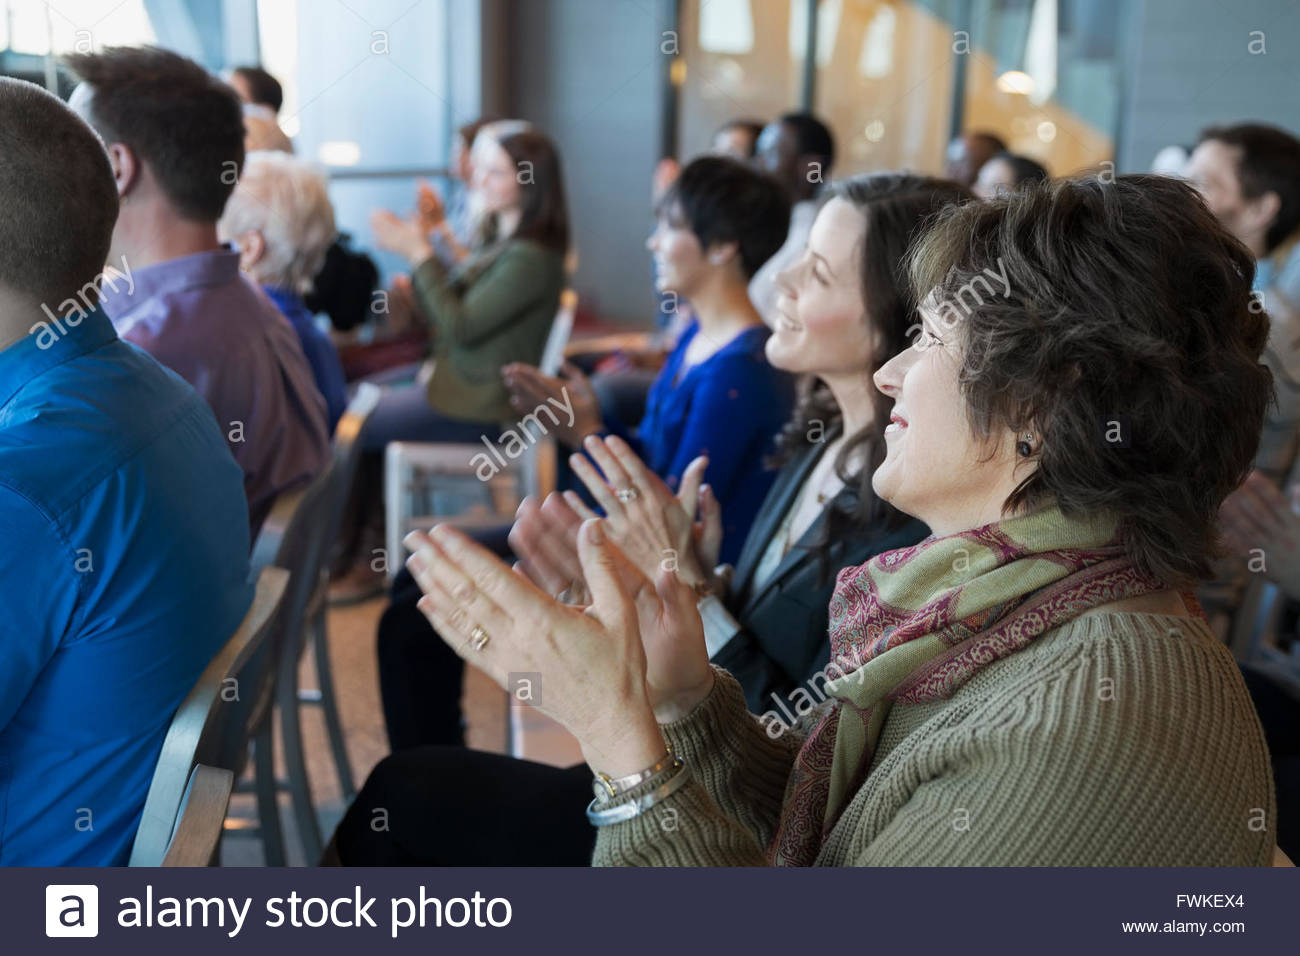 Audience clapping au rassemblement politique Banque D'Images